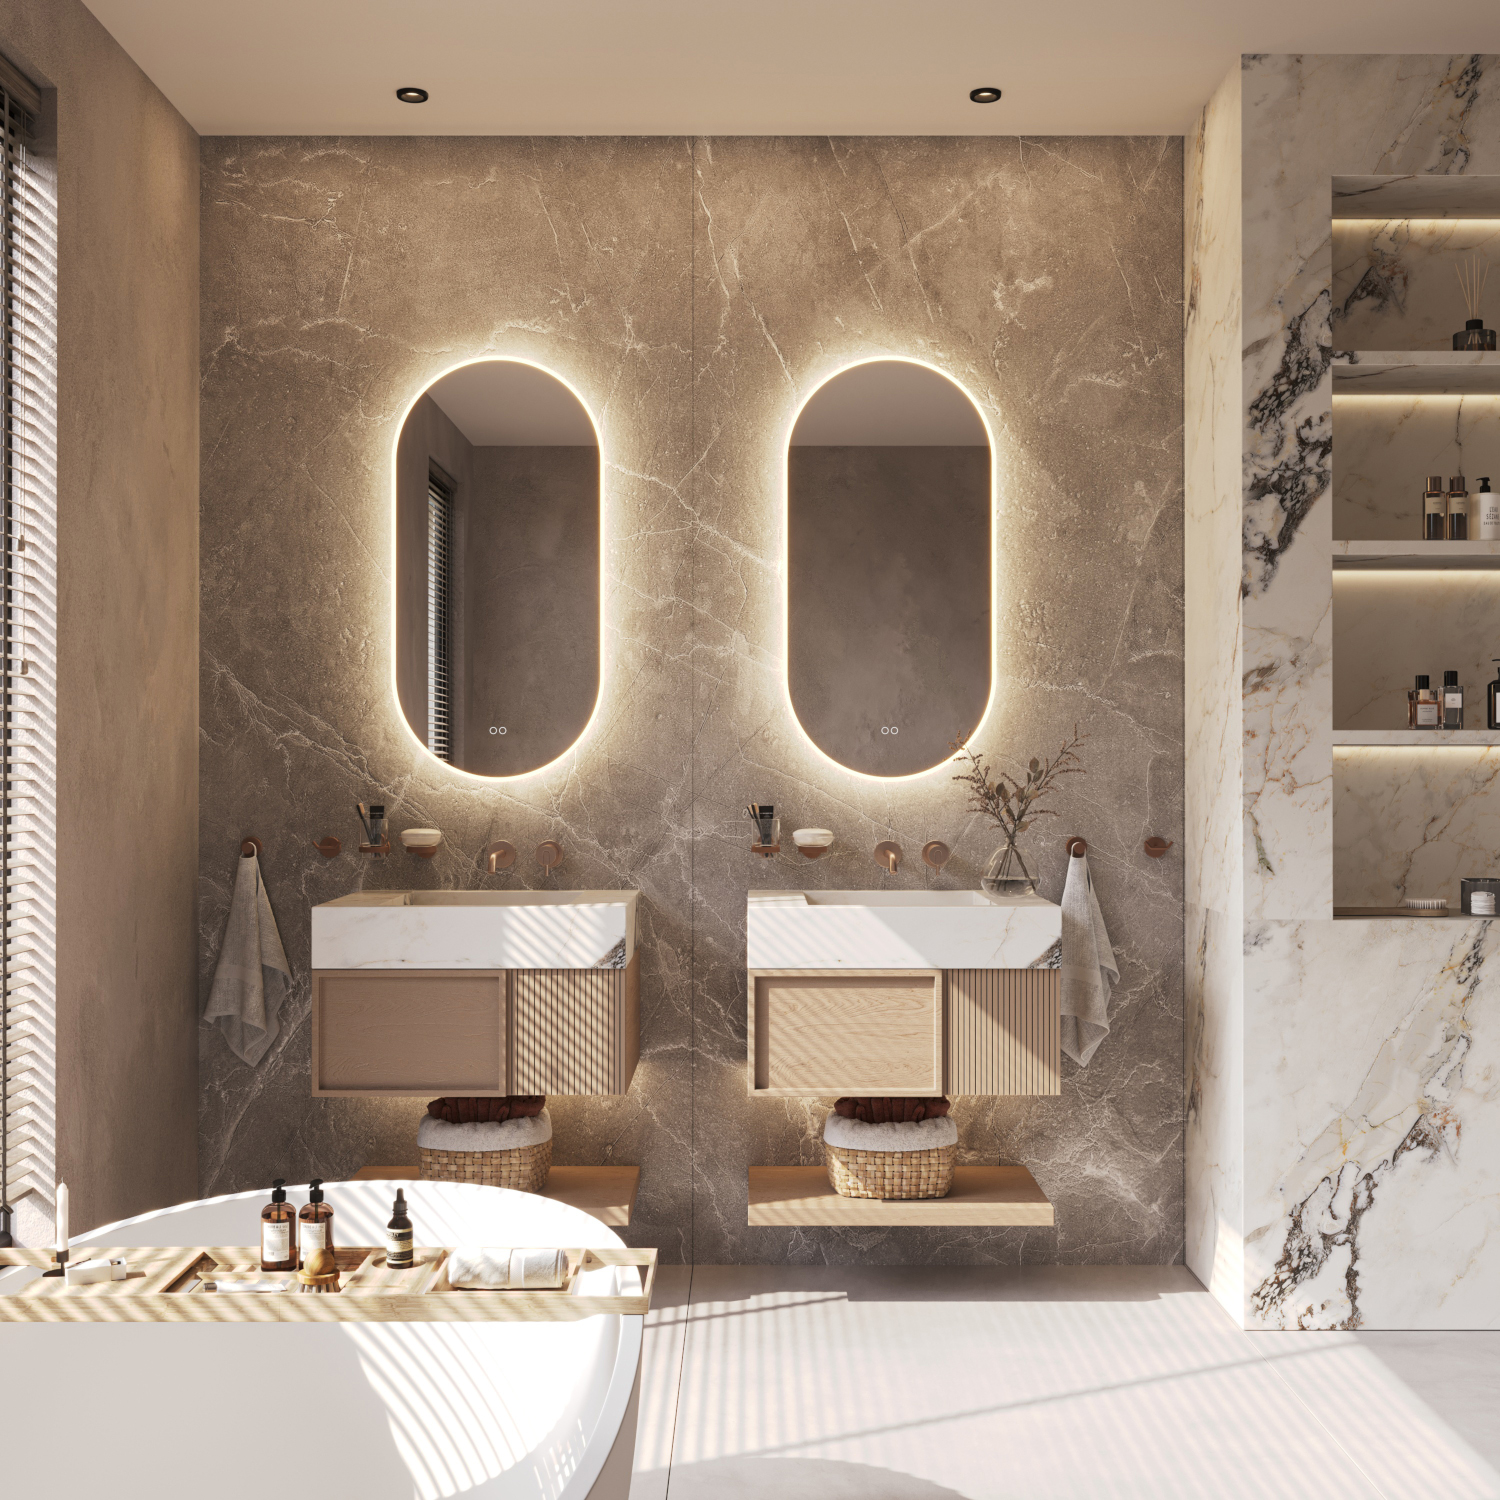 Beschik je over een breed badkamermeubel met 2 kranen of over 2 losse badkamermeubels? Denk dan eens aan 2 spiegels naast elkaar